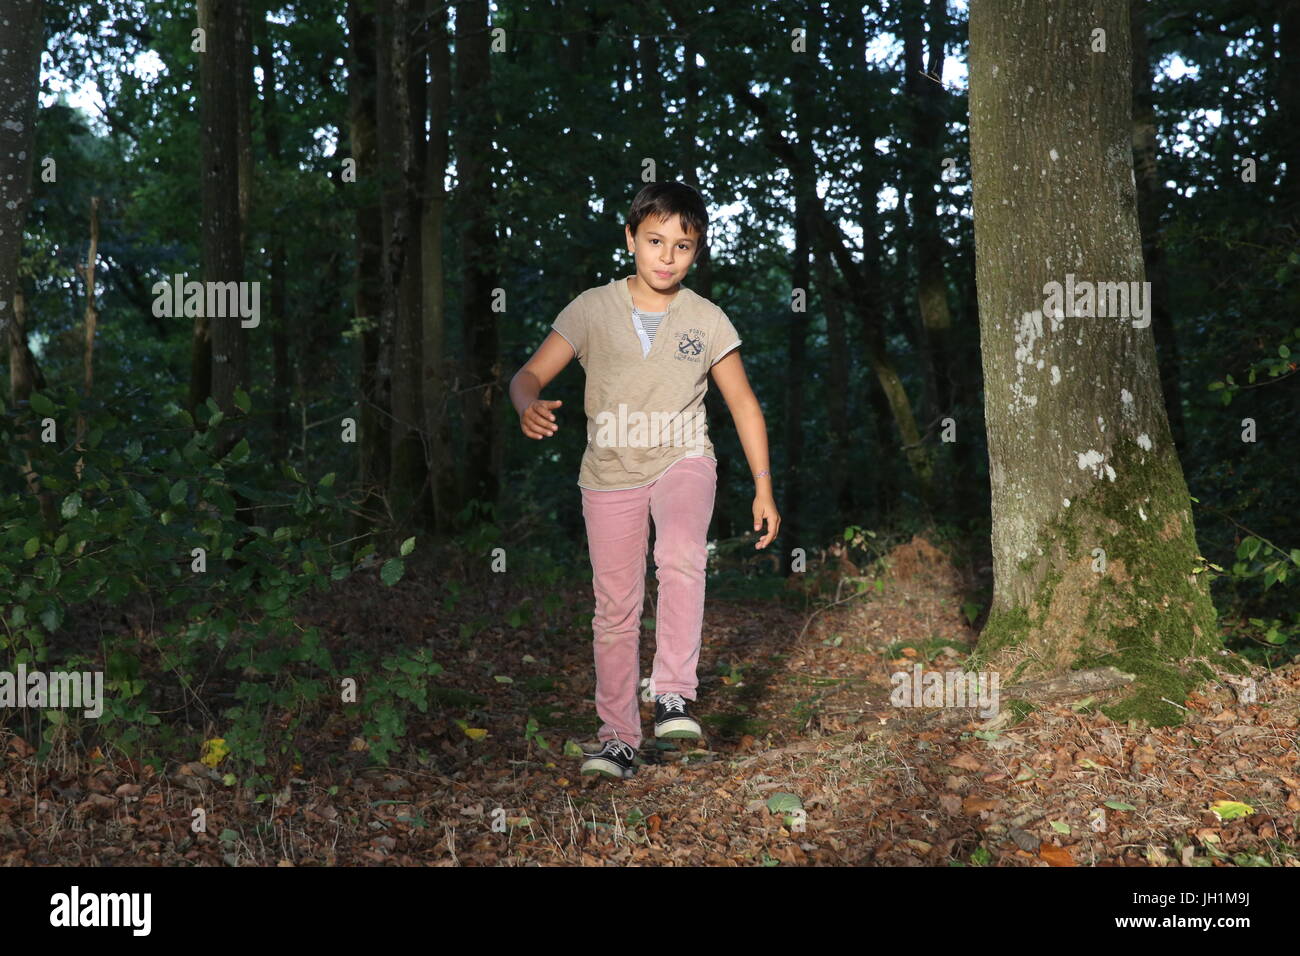 10-año-viejo muchacho caminar fuera de un bosque. Francia. Foto de stock